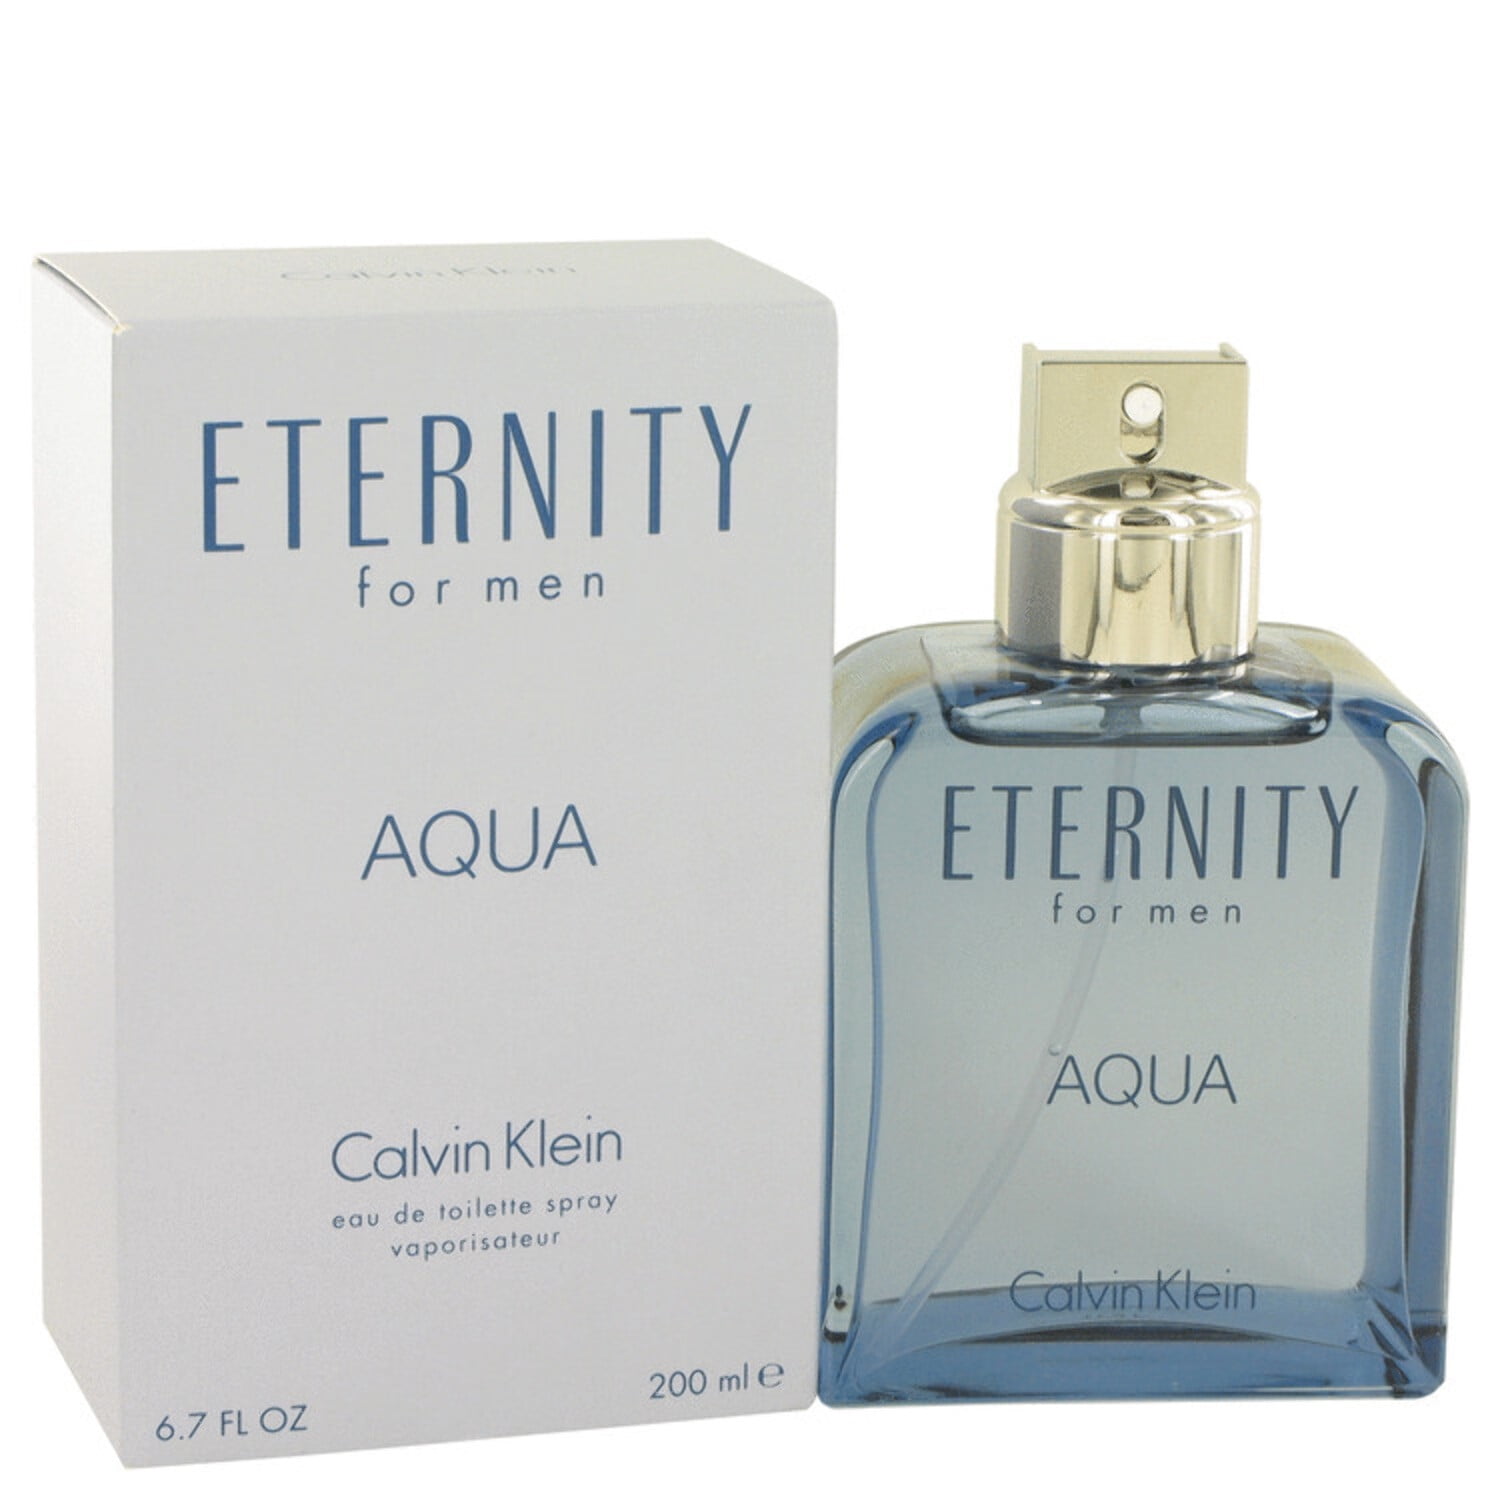 82 Value) Calvin Klein Eternity Aqua Eau De Toilette Spray, Cologne for Men,   Oz 